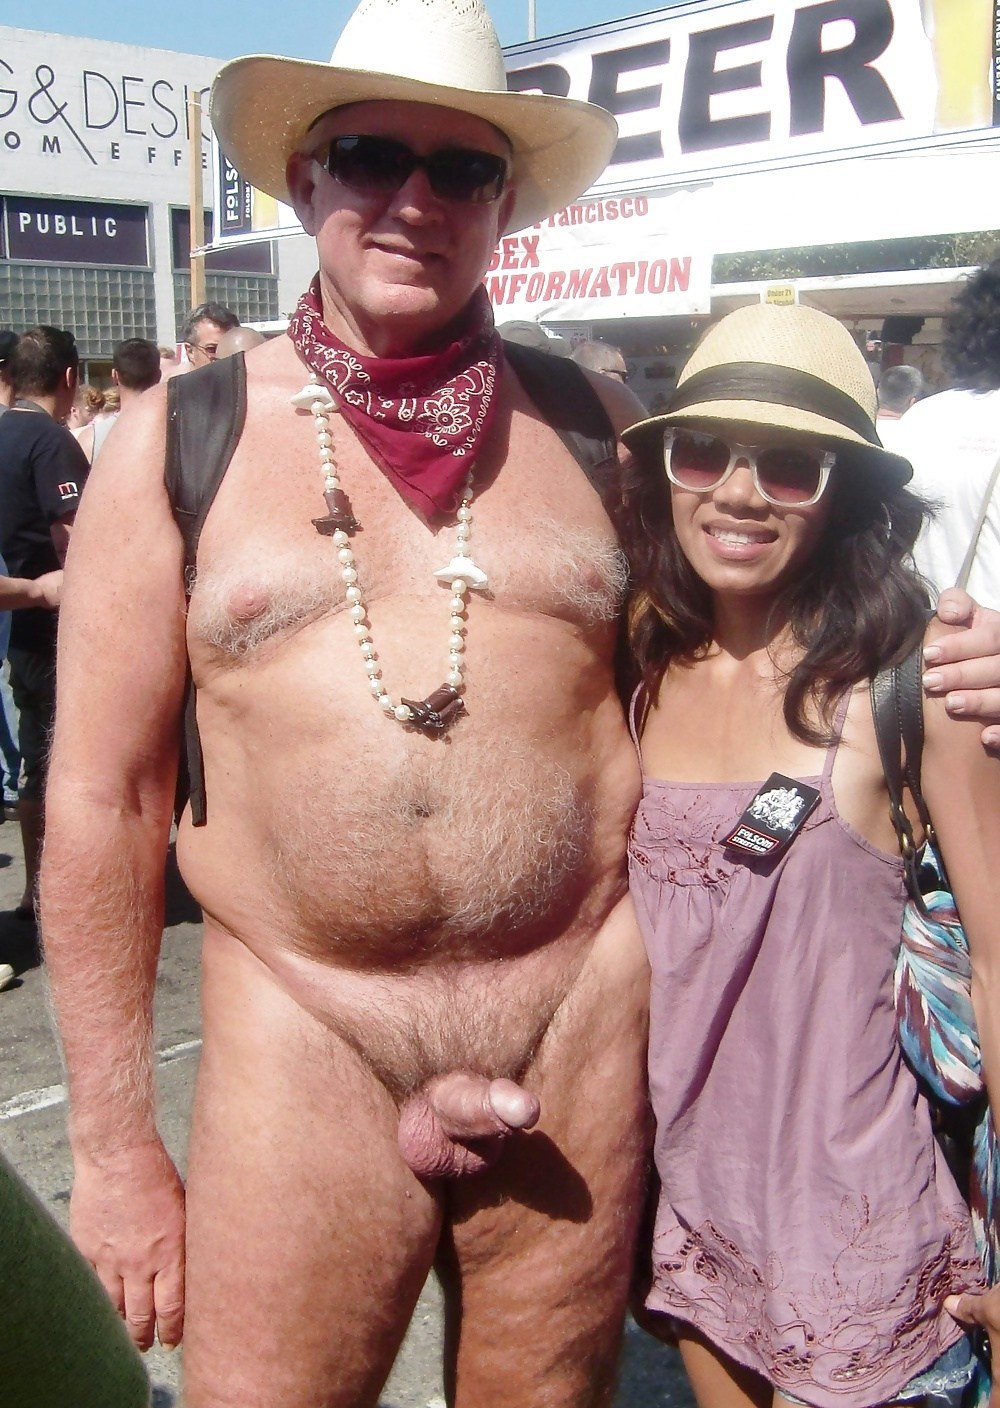 одетые мужчины с голыми женщинами фото 73